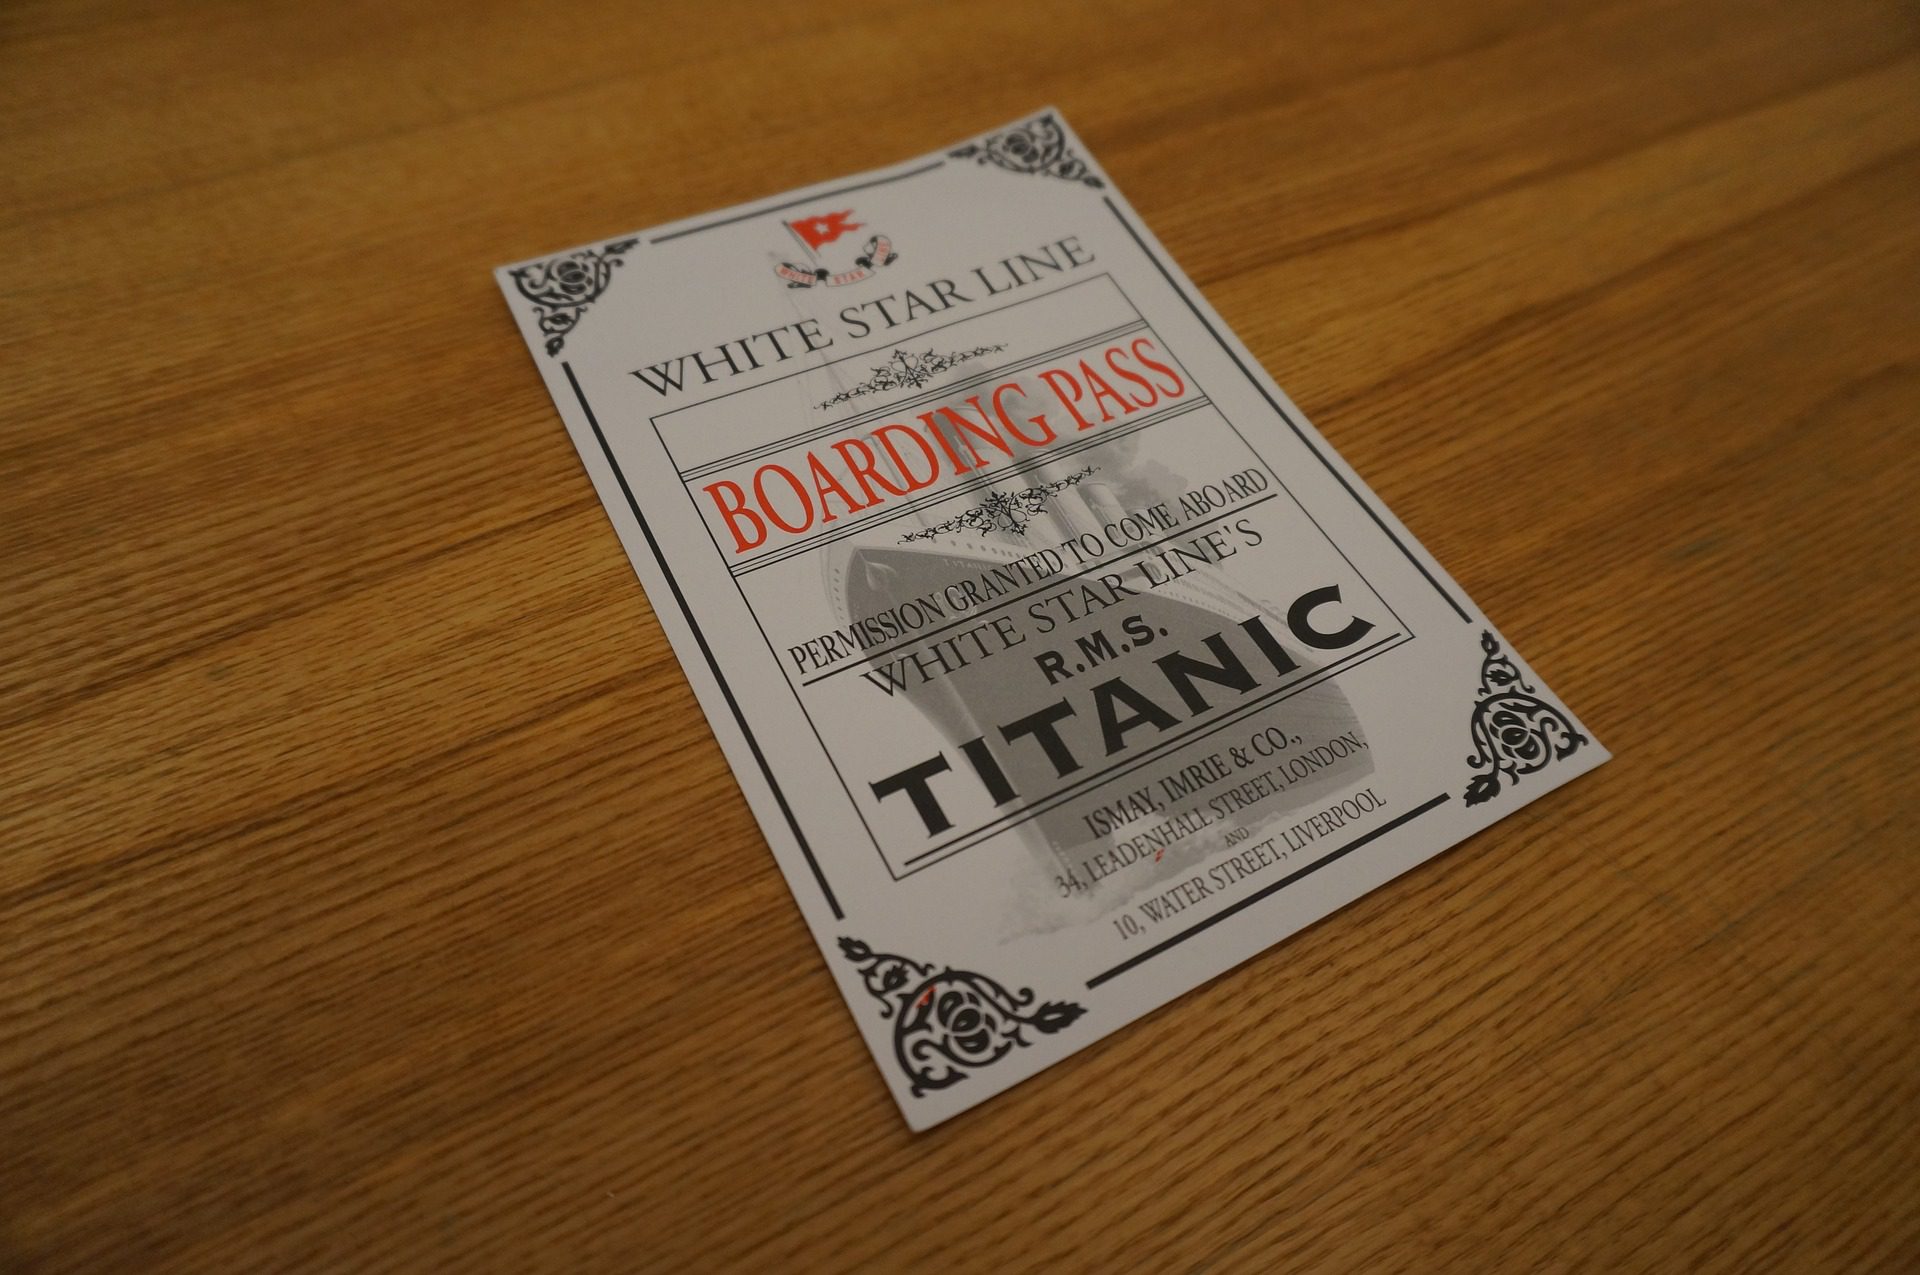 Biglietto titanic